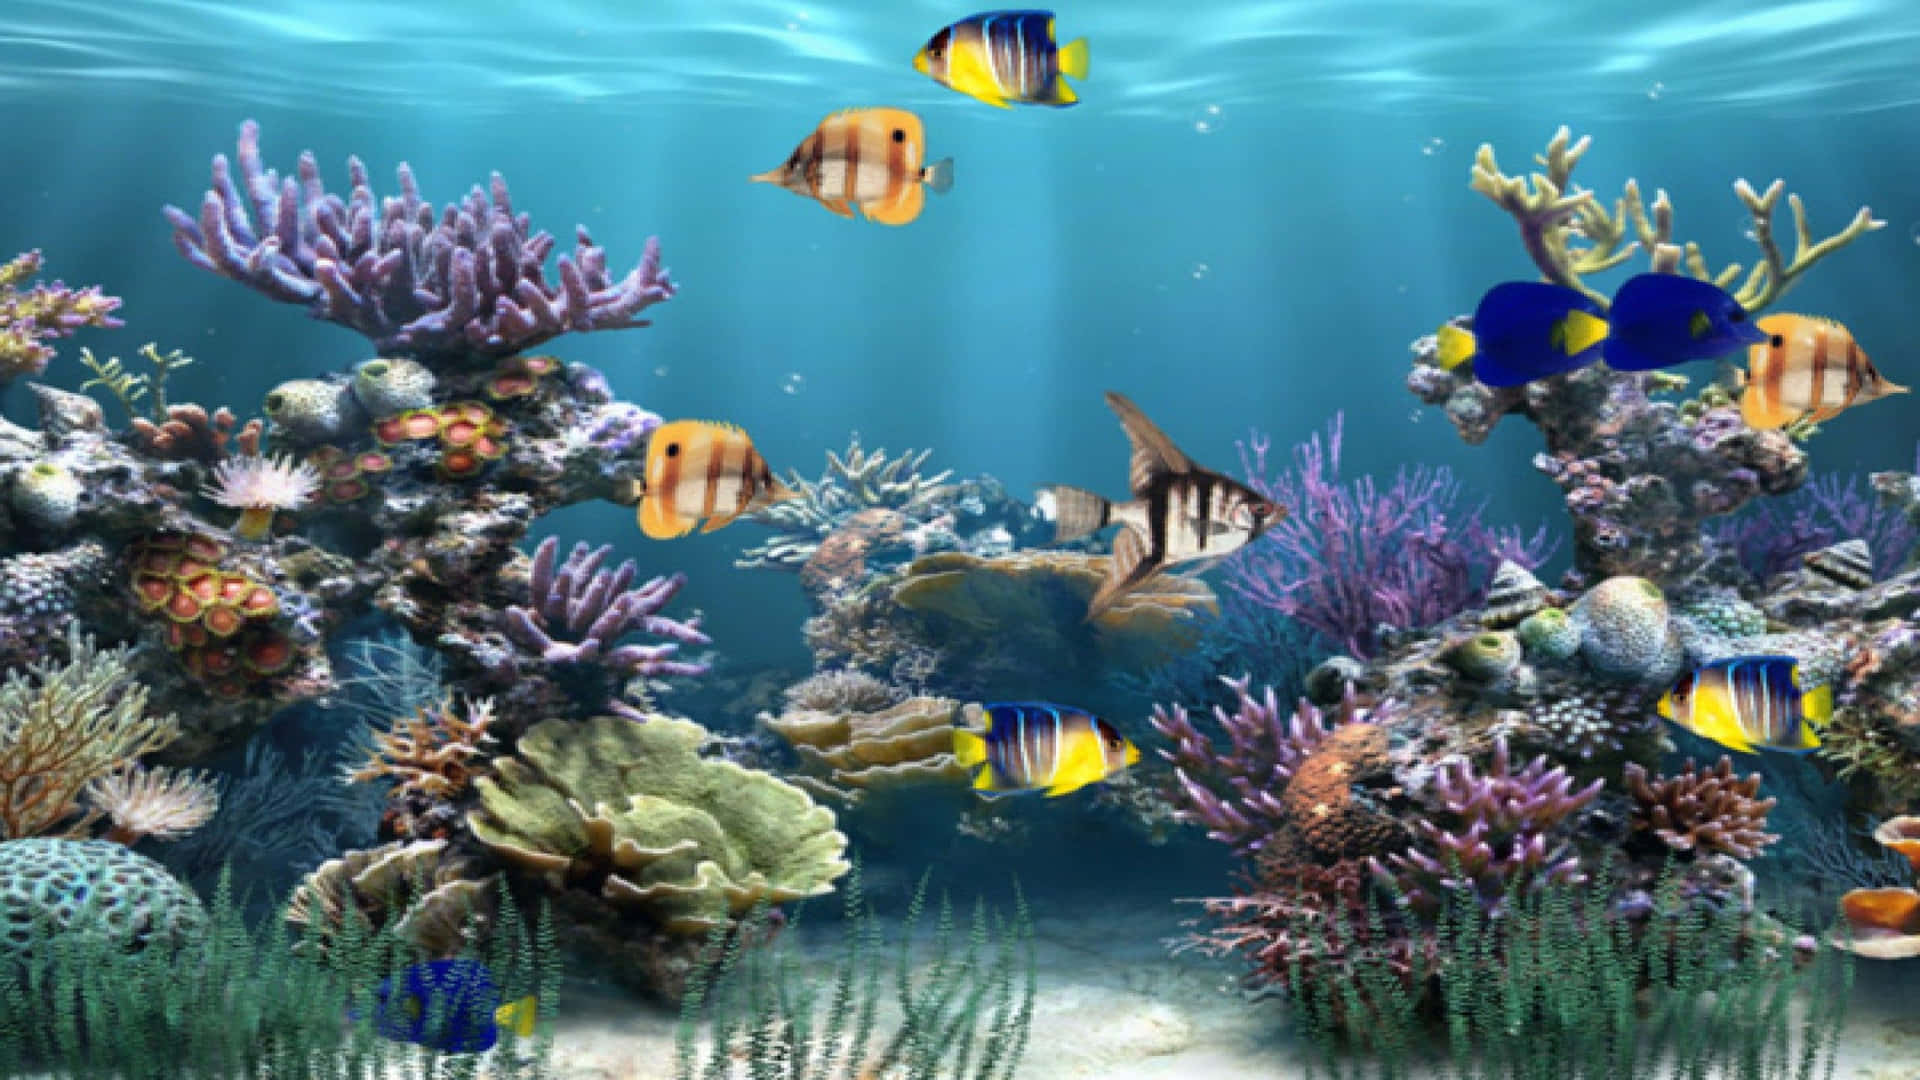 Einscreenshot Eines Aquariums Mit Fischen Und Korallen. Wallpaper